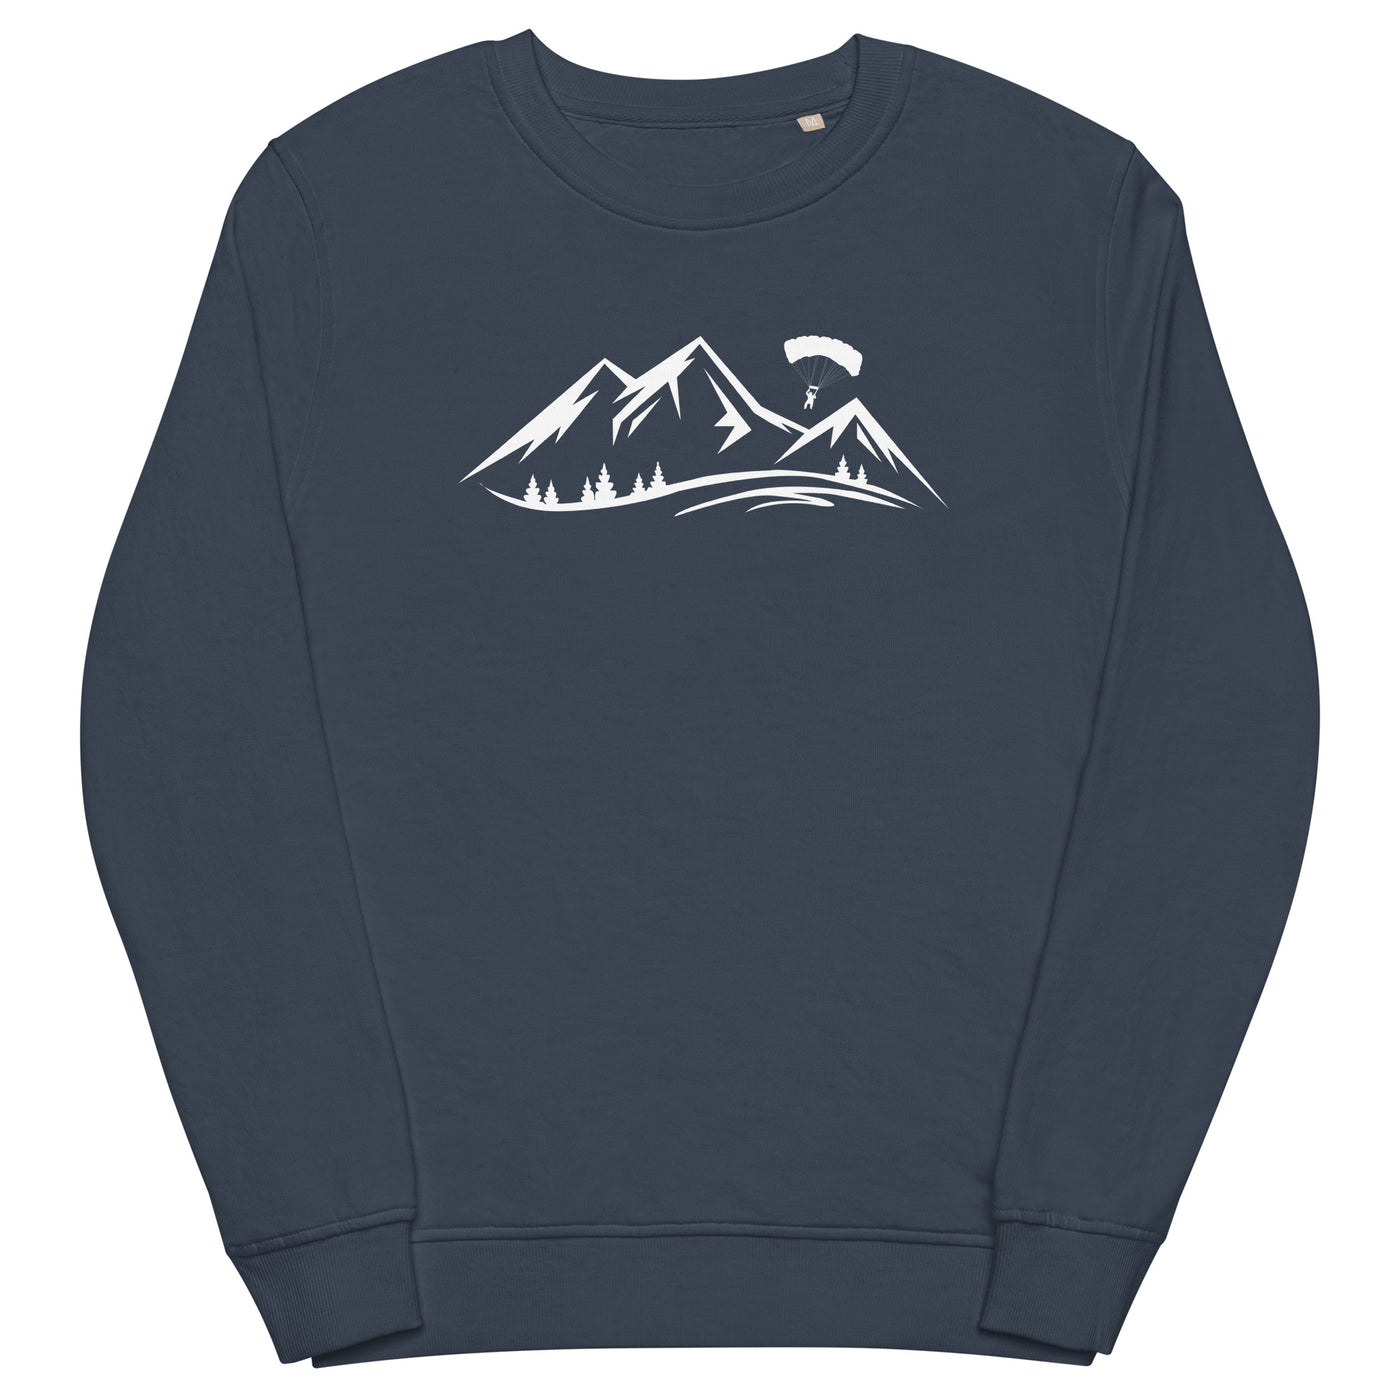 Berge und Paragleiten - Unisex Premium Organic Sweatshirt berge xxx yyy zzz French Navy